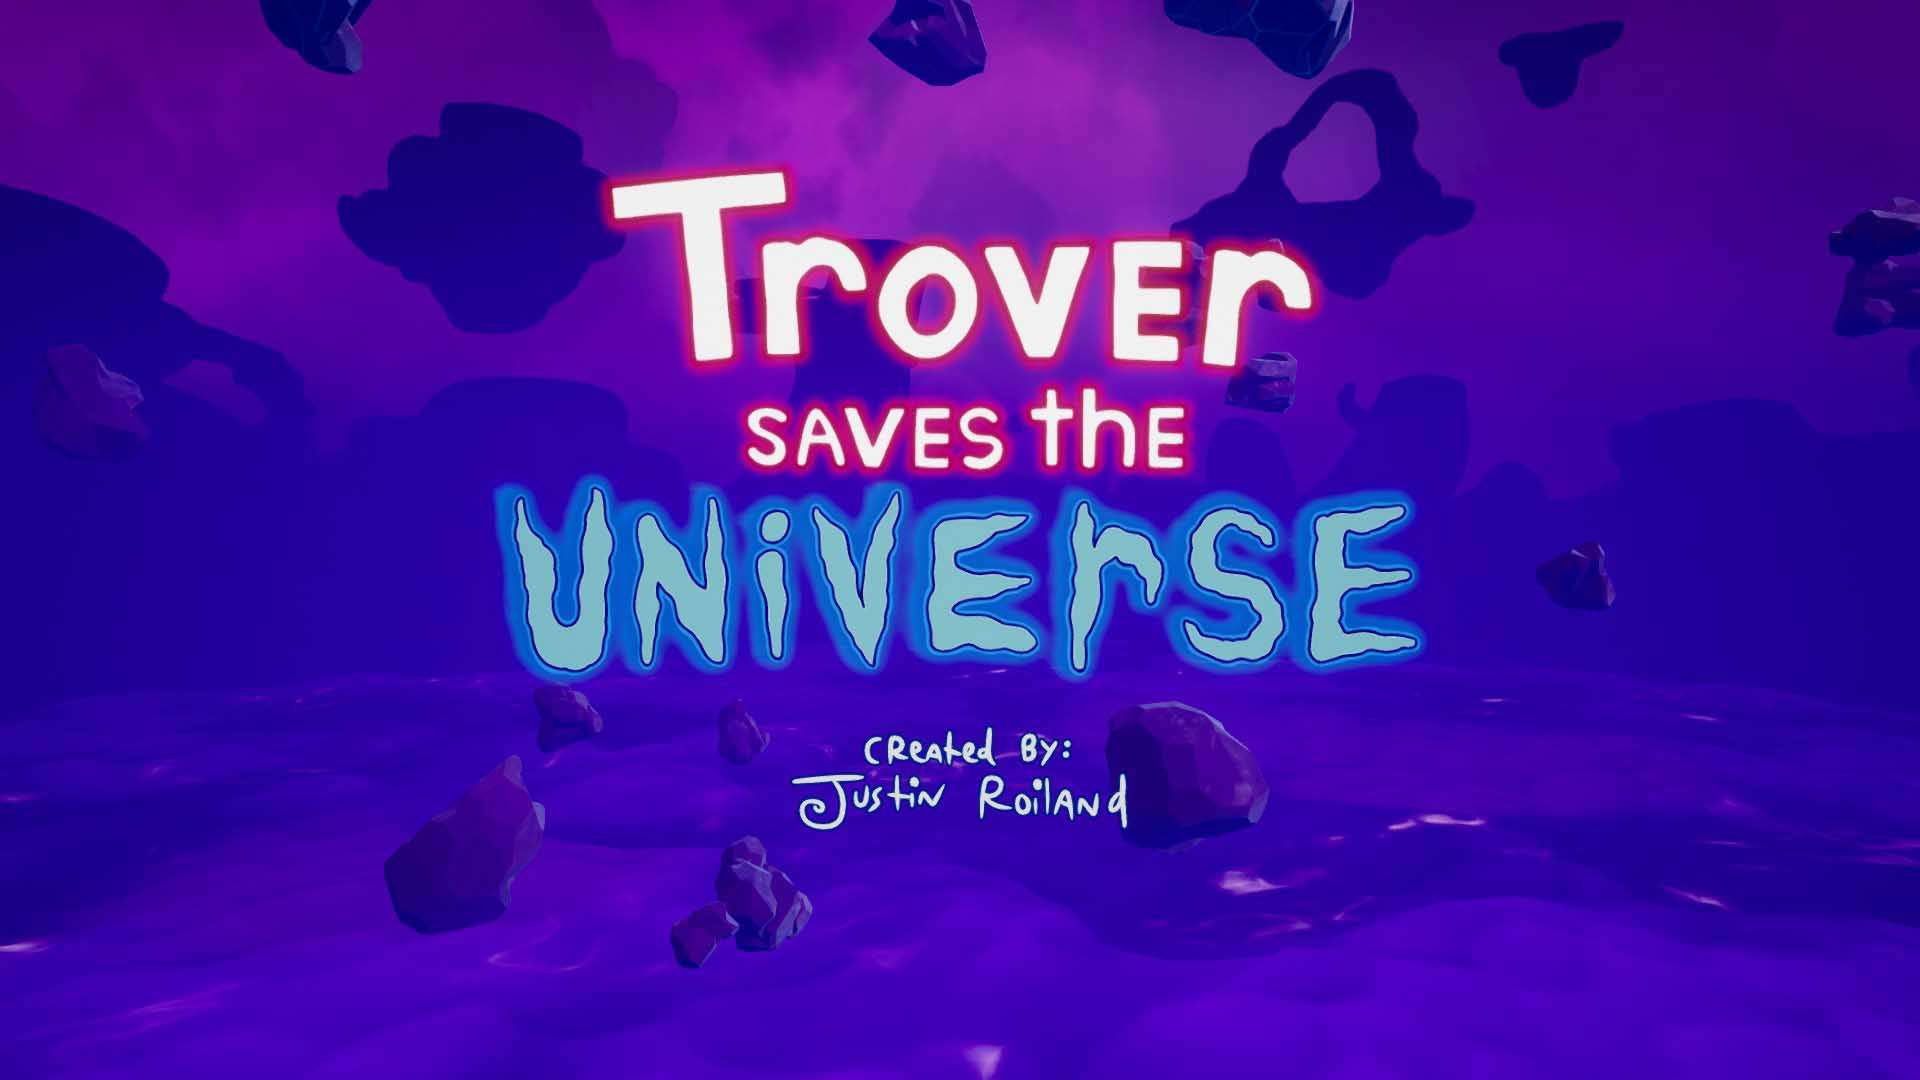 Wiem, że nowe sytuacje mogą być przerażające | Trover Saves the Universe